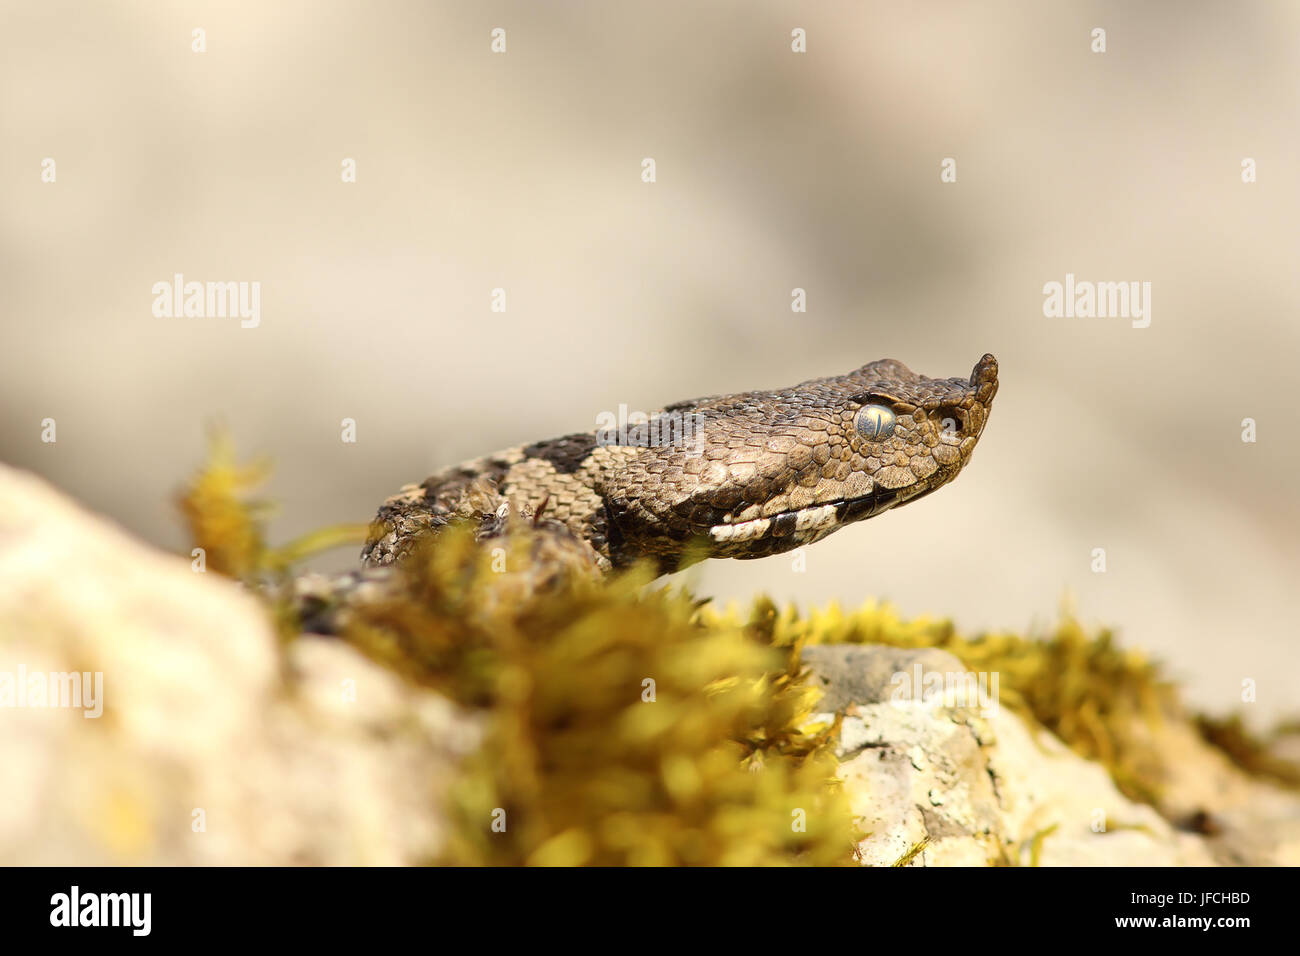 Nase Hornotter Nahaufnahme des Kopfes (Vipera Ammodytes, die gefährlichste weit verbreitete europäische Schlange) Stockfoto